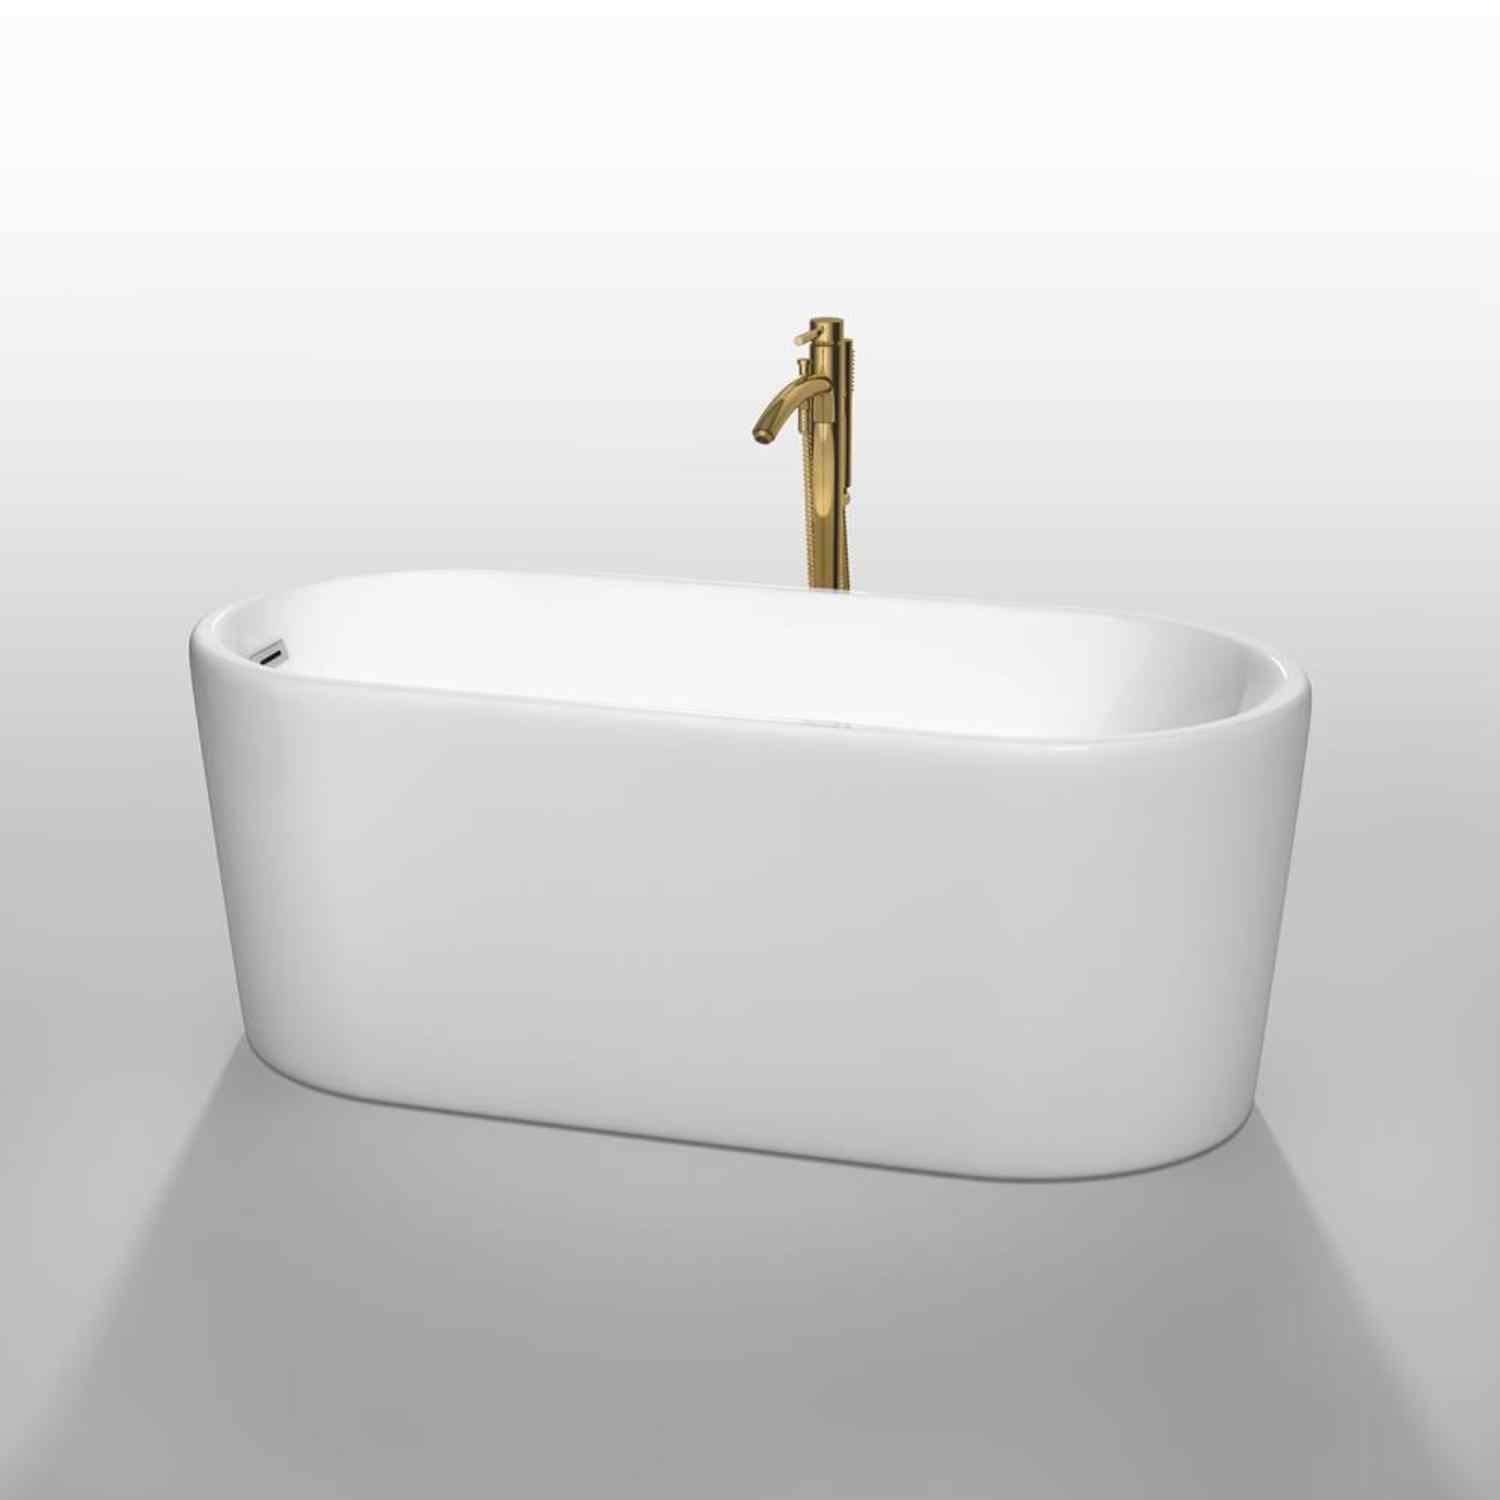 Wyndham collection Ursula 59 Inch Freestanding Bathtub in White golden fuchet